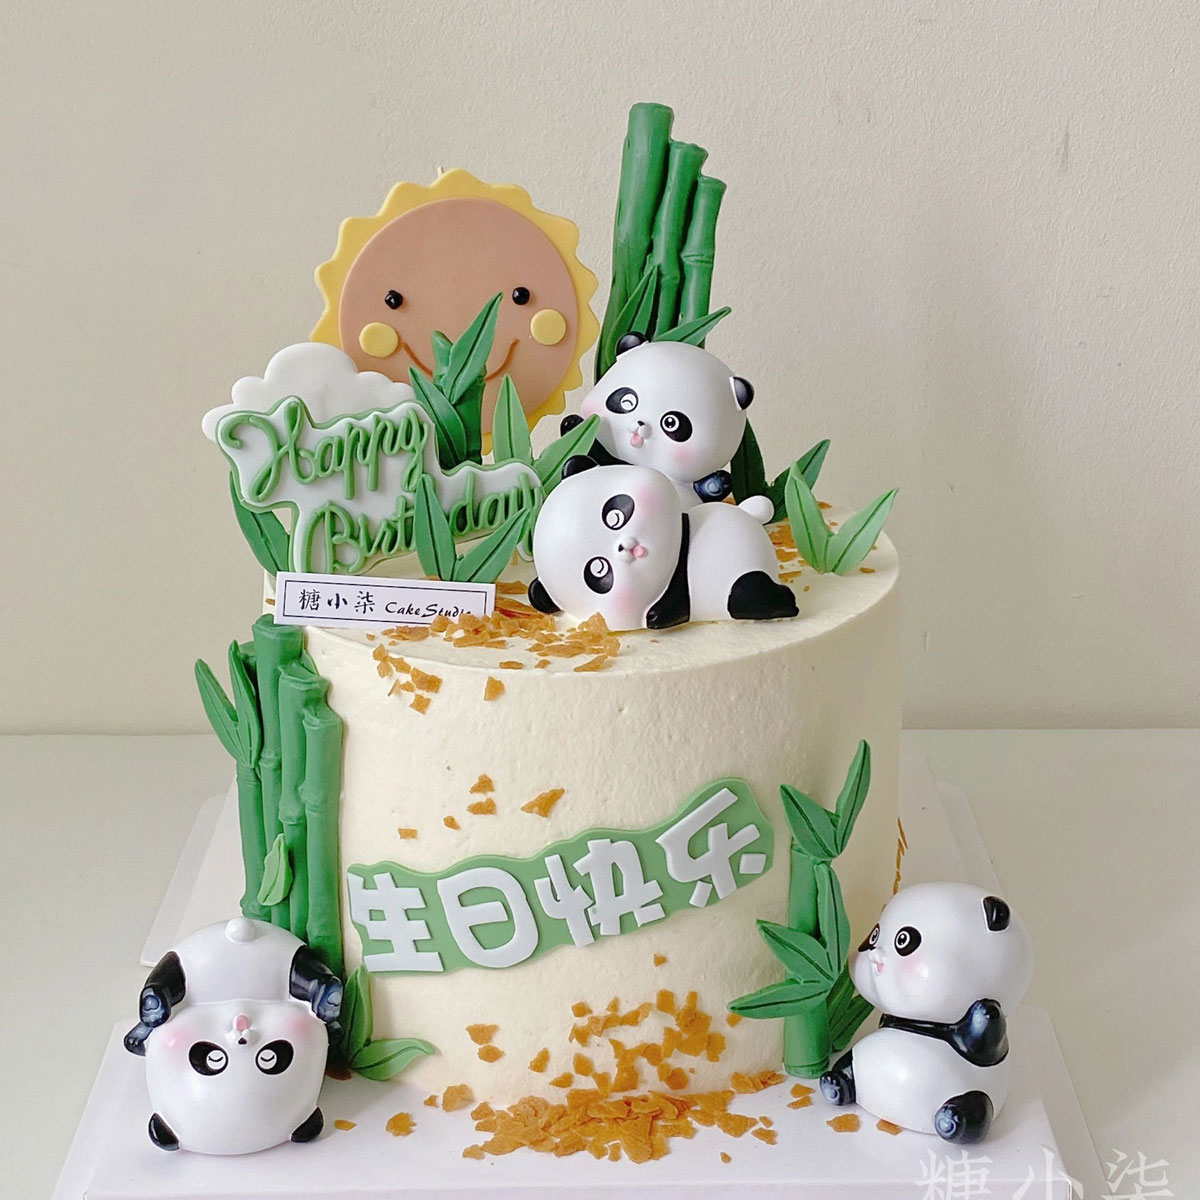 可爱黑色大熊猫摆件Q萌滚滚大熊猫竹子模具儿童生日蛋糕装饰摆件